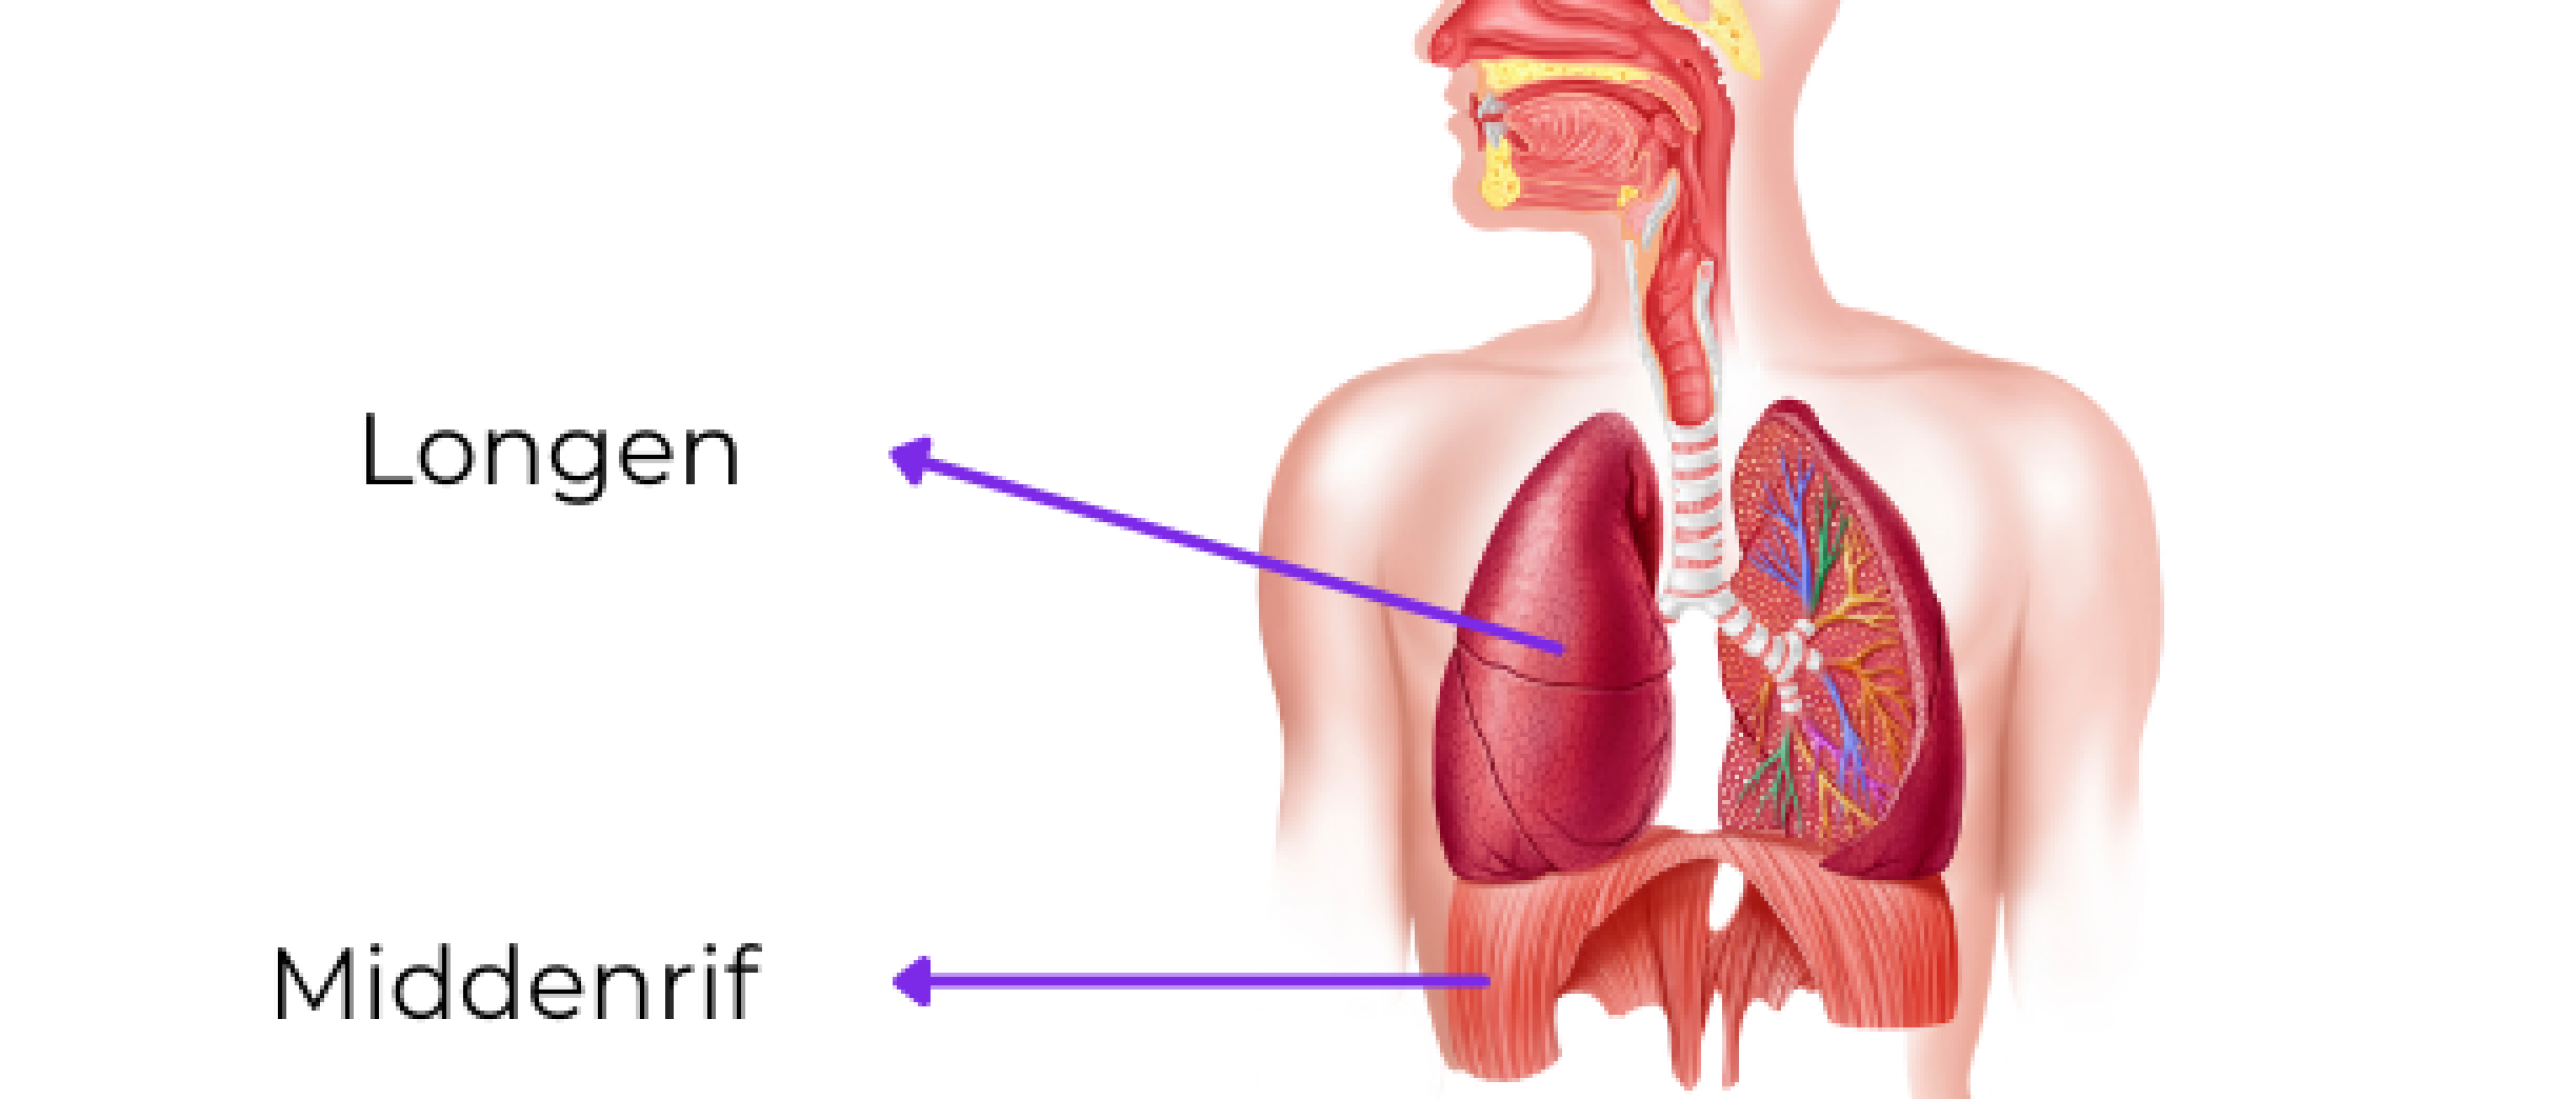 Middenrif en longen